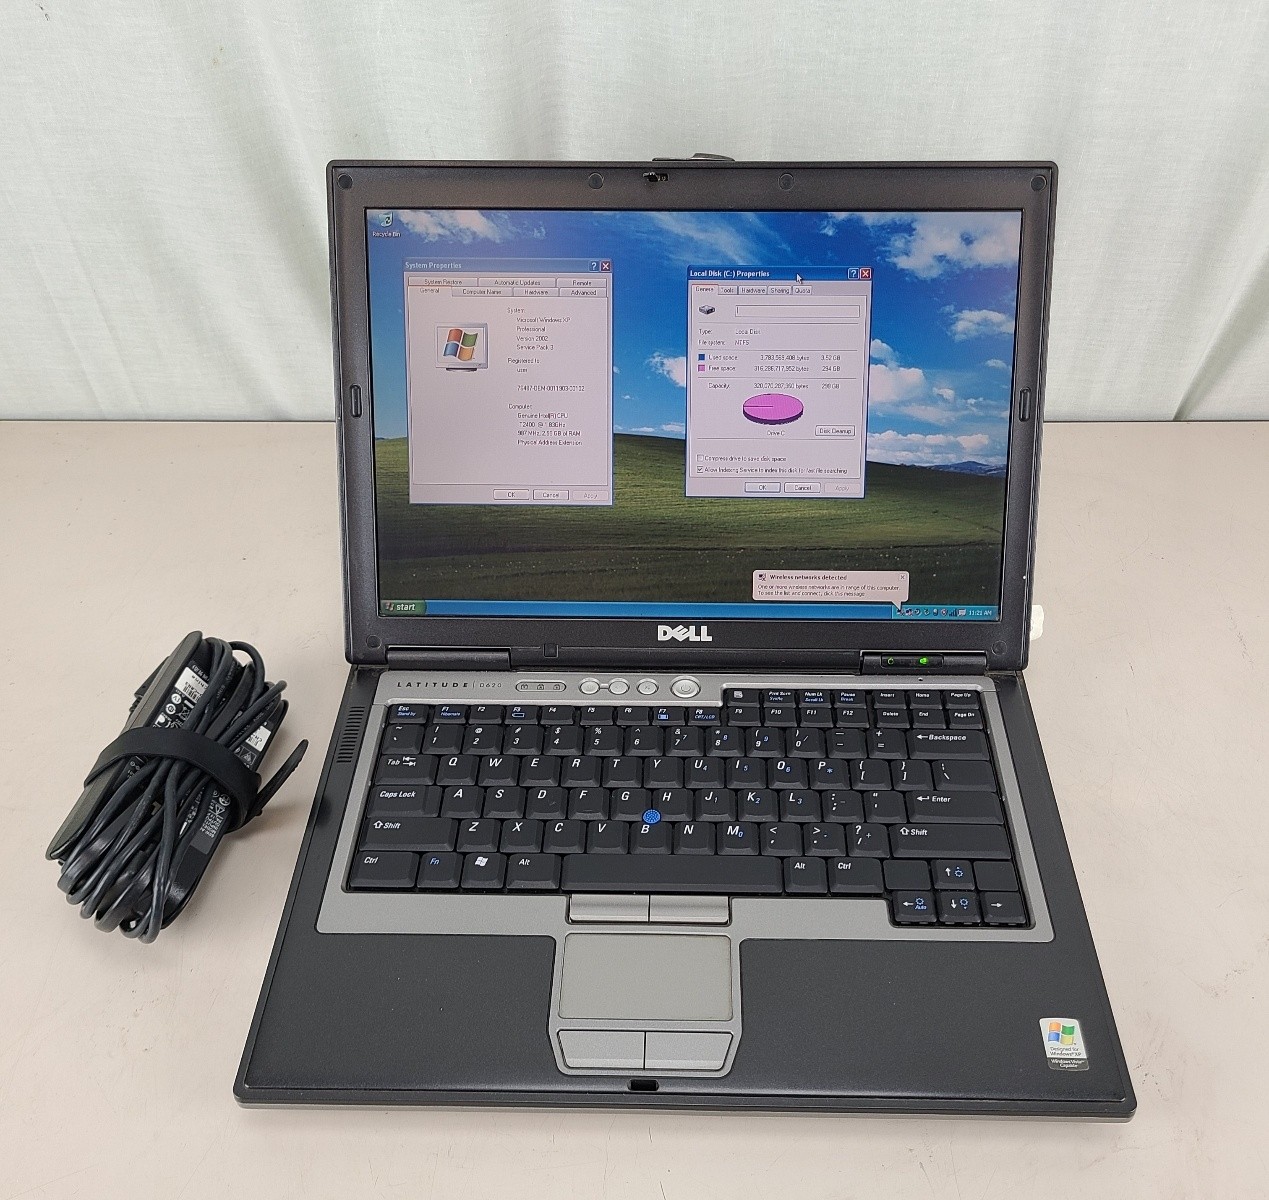 Dell Latitude D620 Laptop C2D 1.83GHz 4Gb 320Gb Windows XP Pro SP3